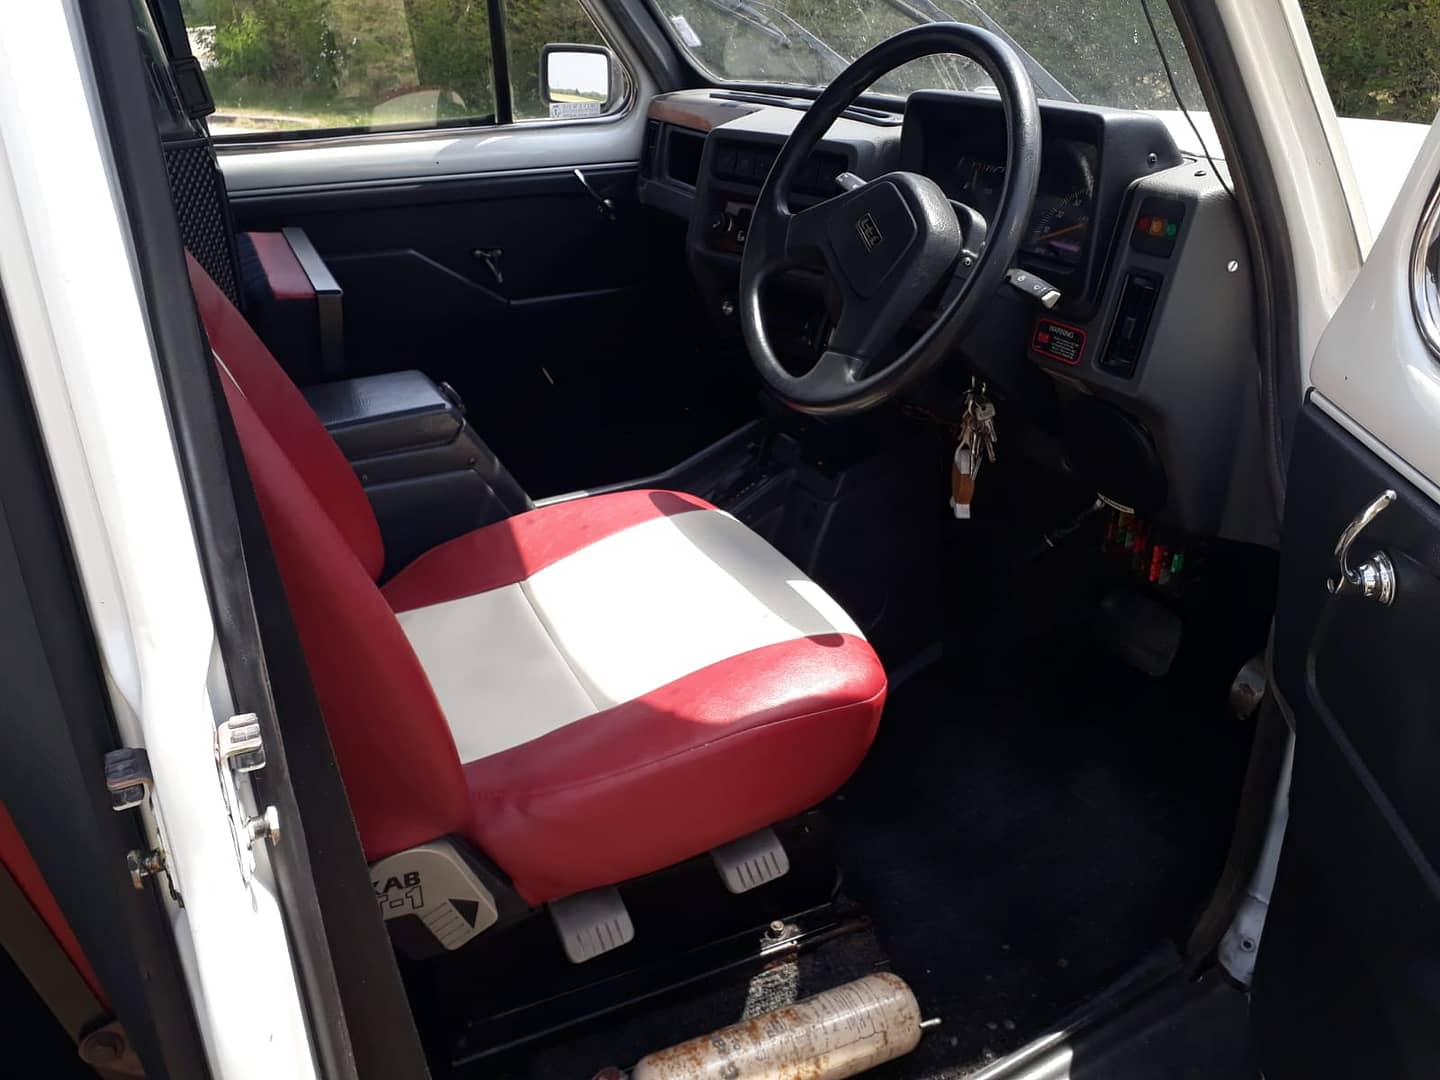 siege conducteur en vinyl rouge et blanc dans taxi anglais